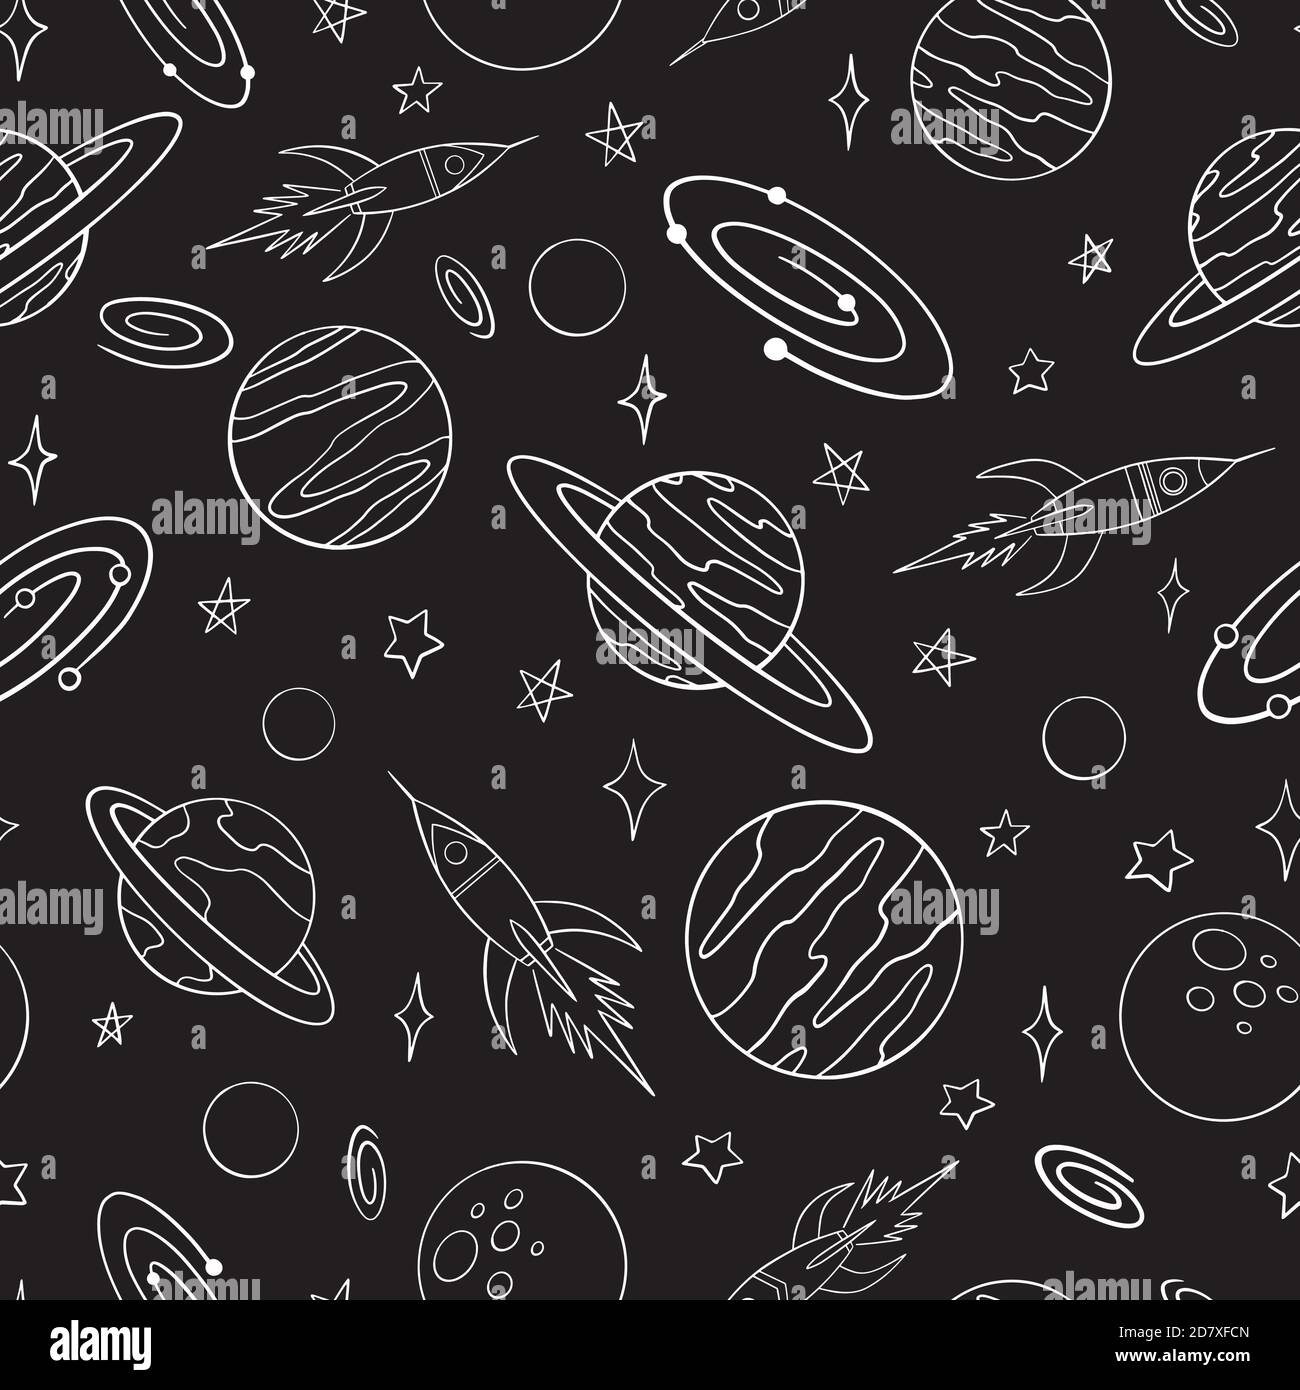 Raumschiffe und Planeten Doodle nahtlose Muster. Handgezeichneter Hintergrund. Vektor-Illustration für Oberflächengestaltung, Druck, Poster, Icon, Web, Grafik-Design Stock Vektor